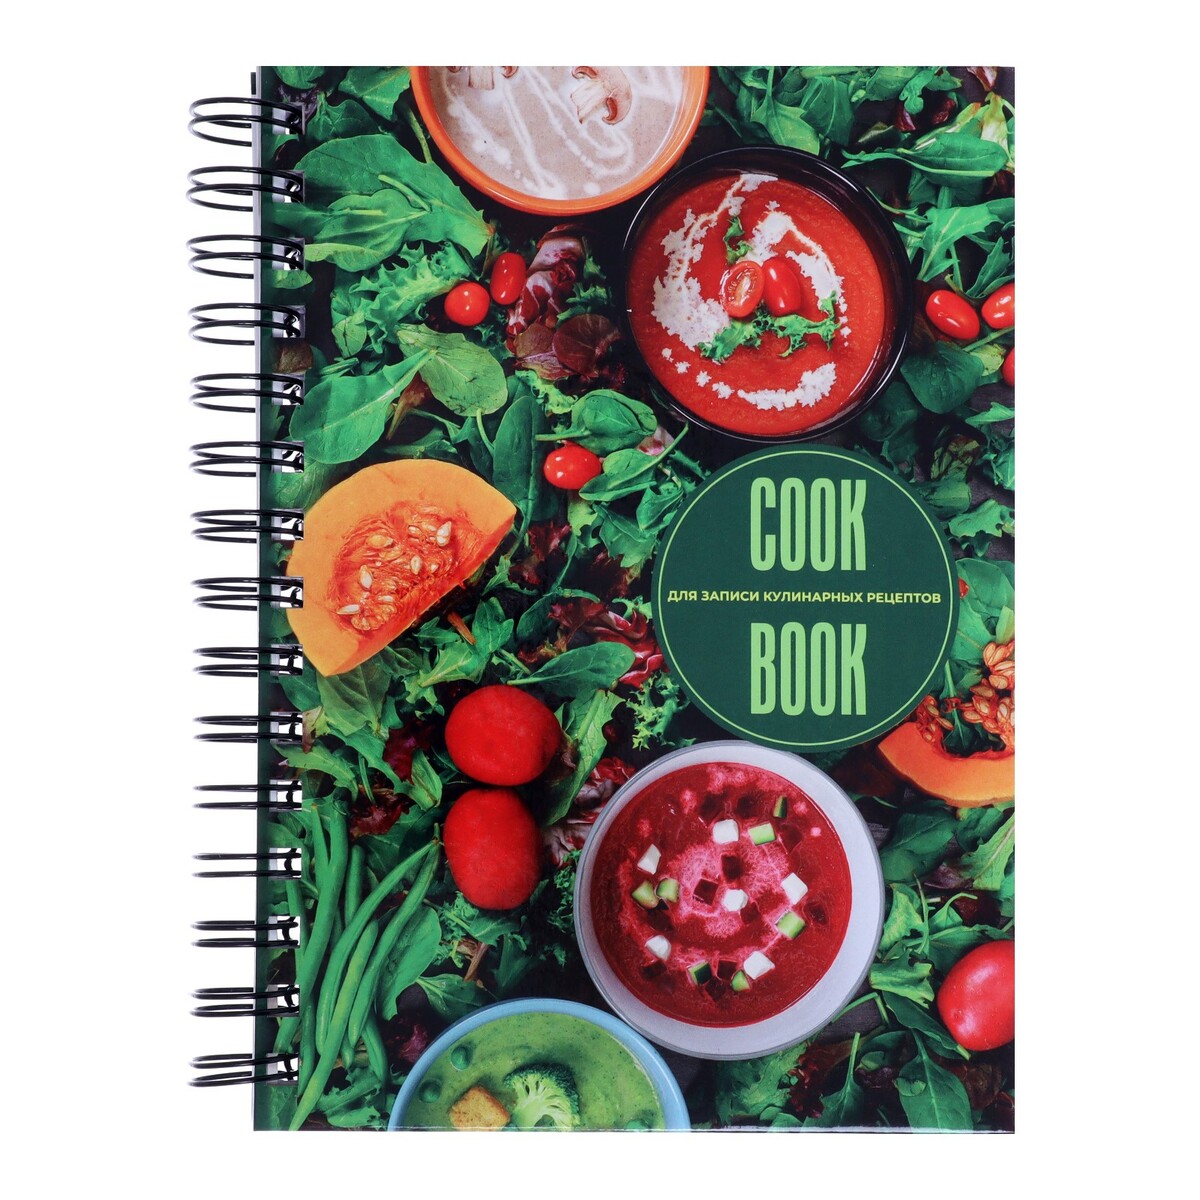 Книга для записи кулинарных рецептов а5, 80 листов на гребне linux книга рецептов все необходимое для администраторов и пользователей